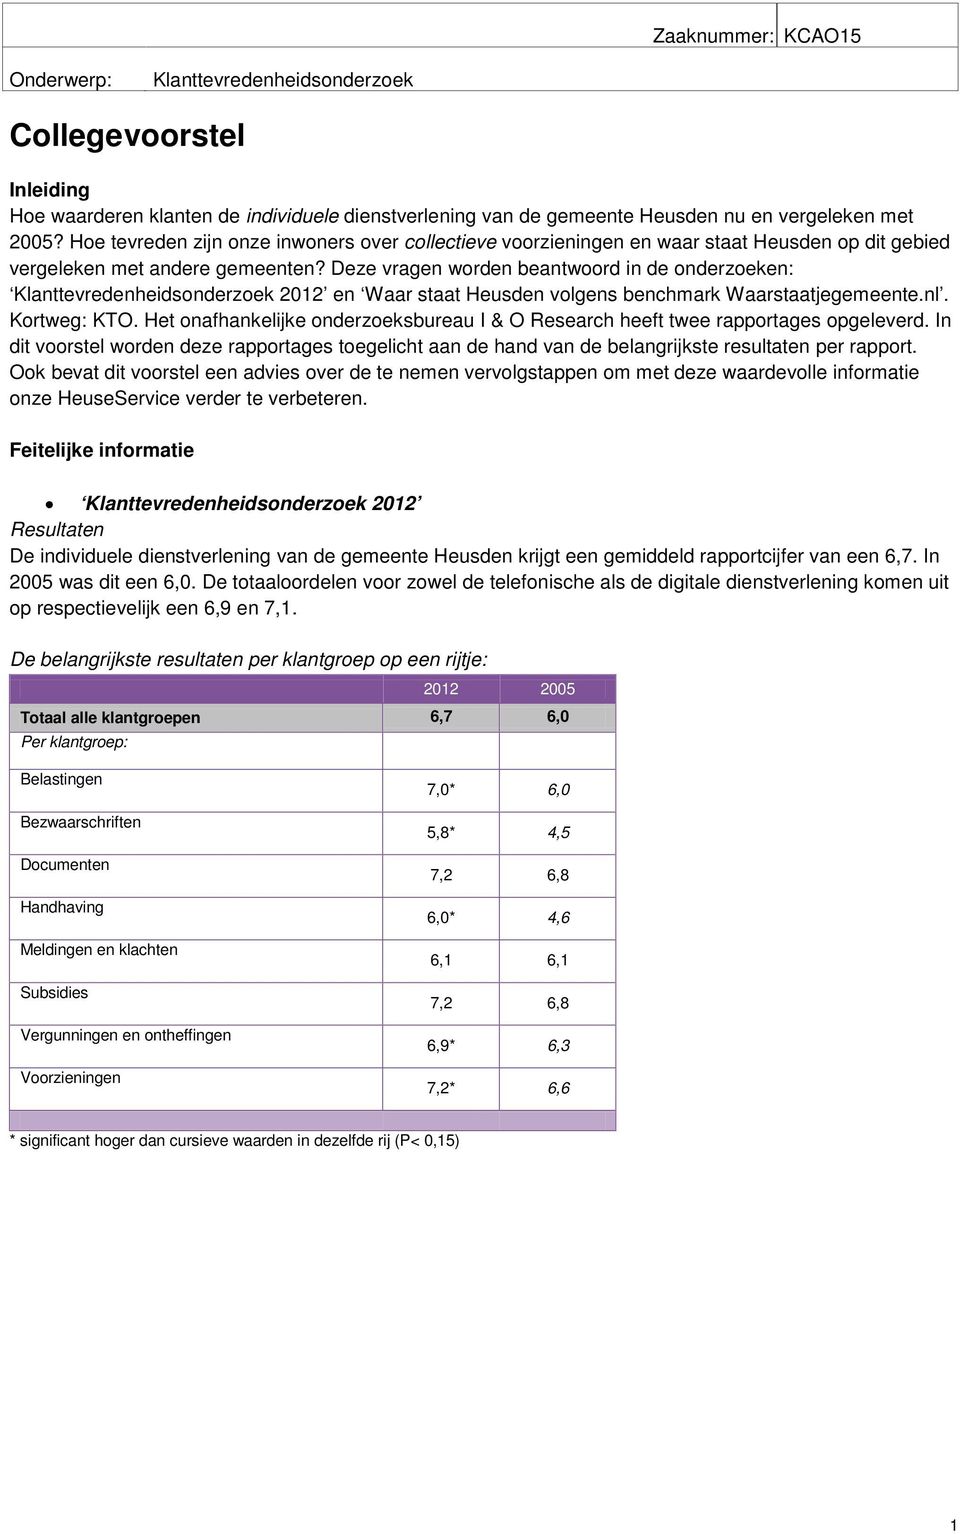 Deze vragen worden beantwoord in de onderzoeken: Klanttevredenheidsonderzoek 2012 en Waar staat Heusden volgens benchmark Waarstaatjegemeente.nl. Kortweg: KTO.